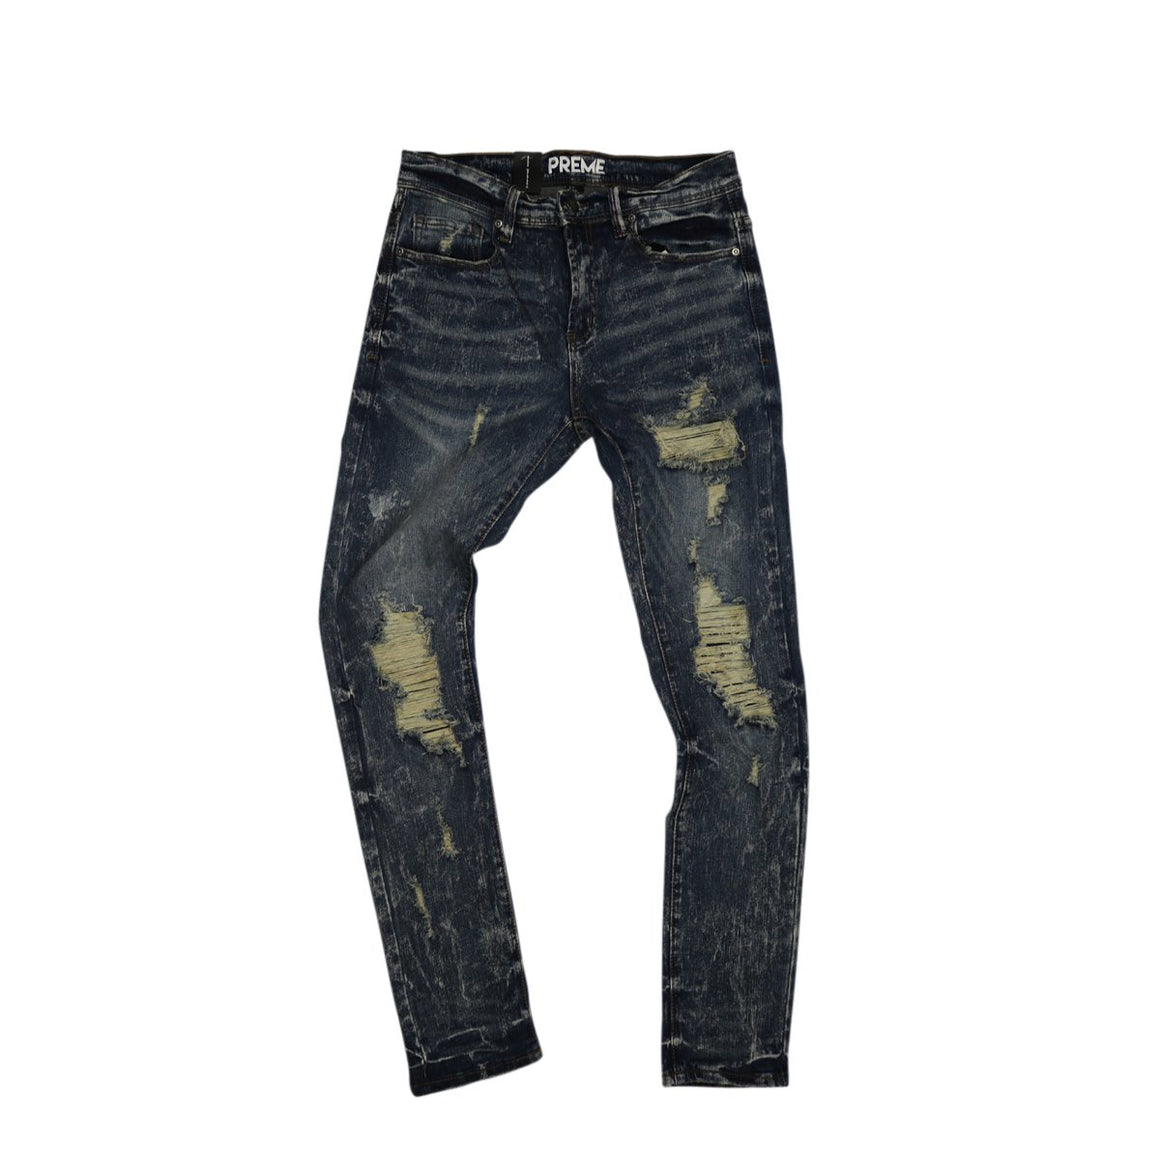 Men's Preme Distressed Skinny Jeans